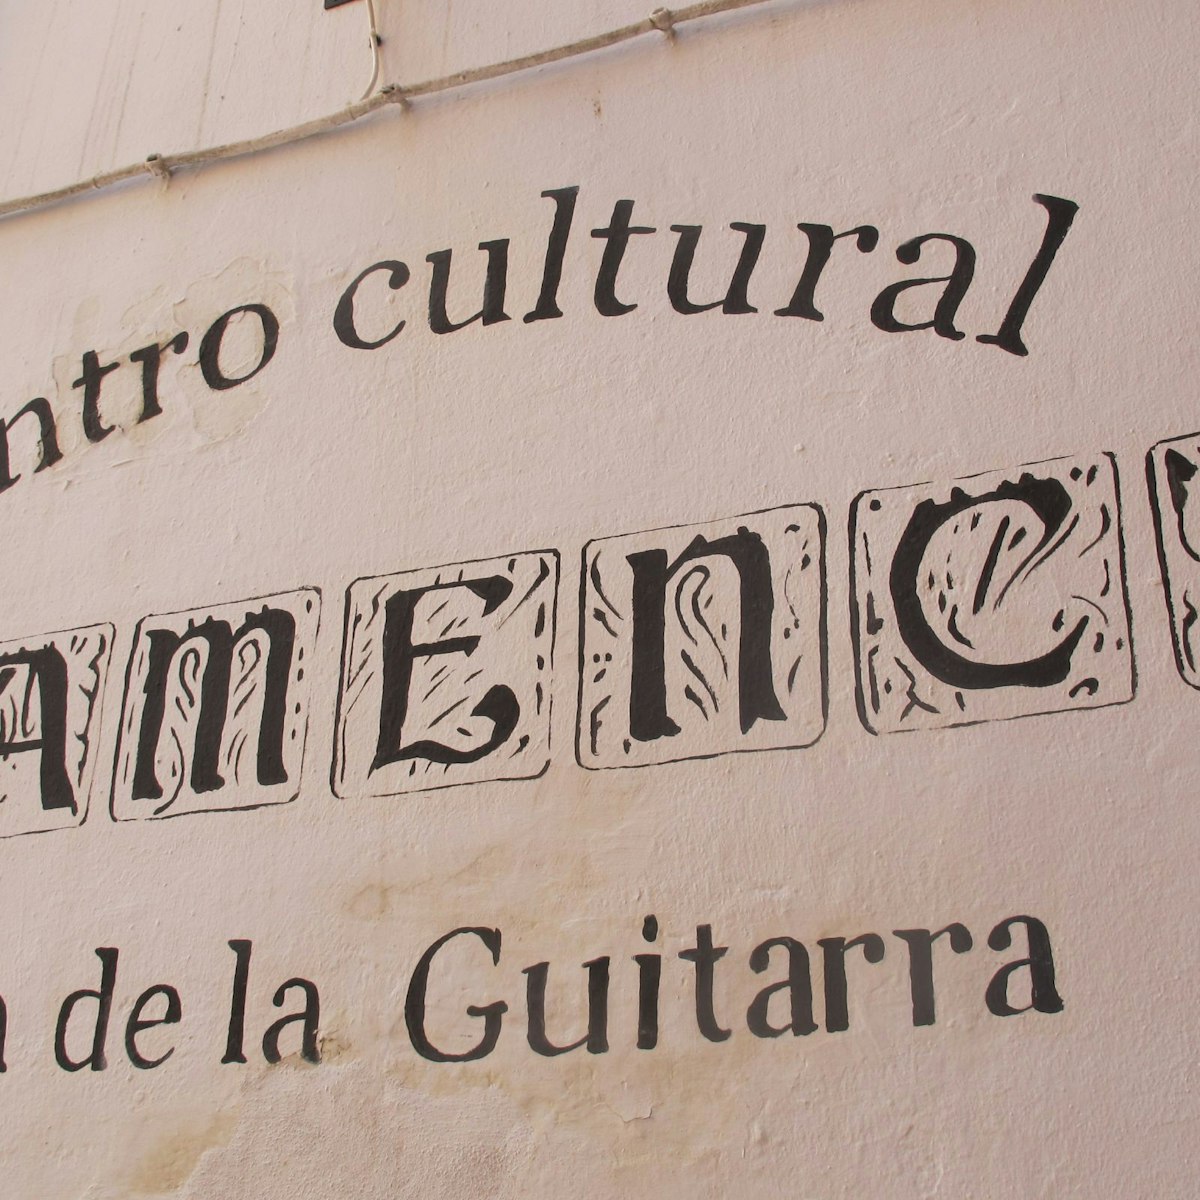 Casa de la Guitarra name on wall.